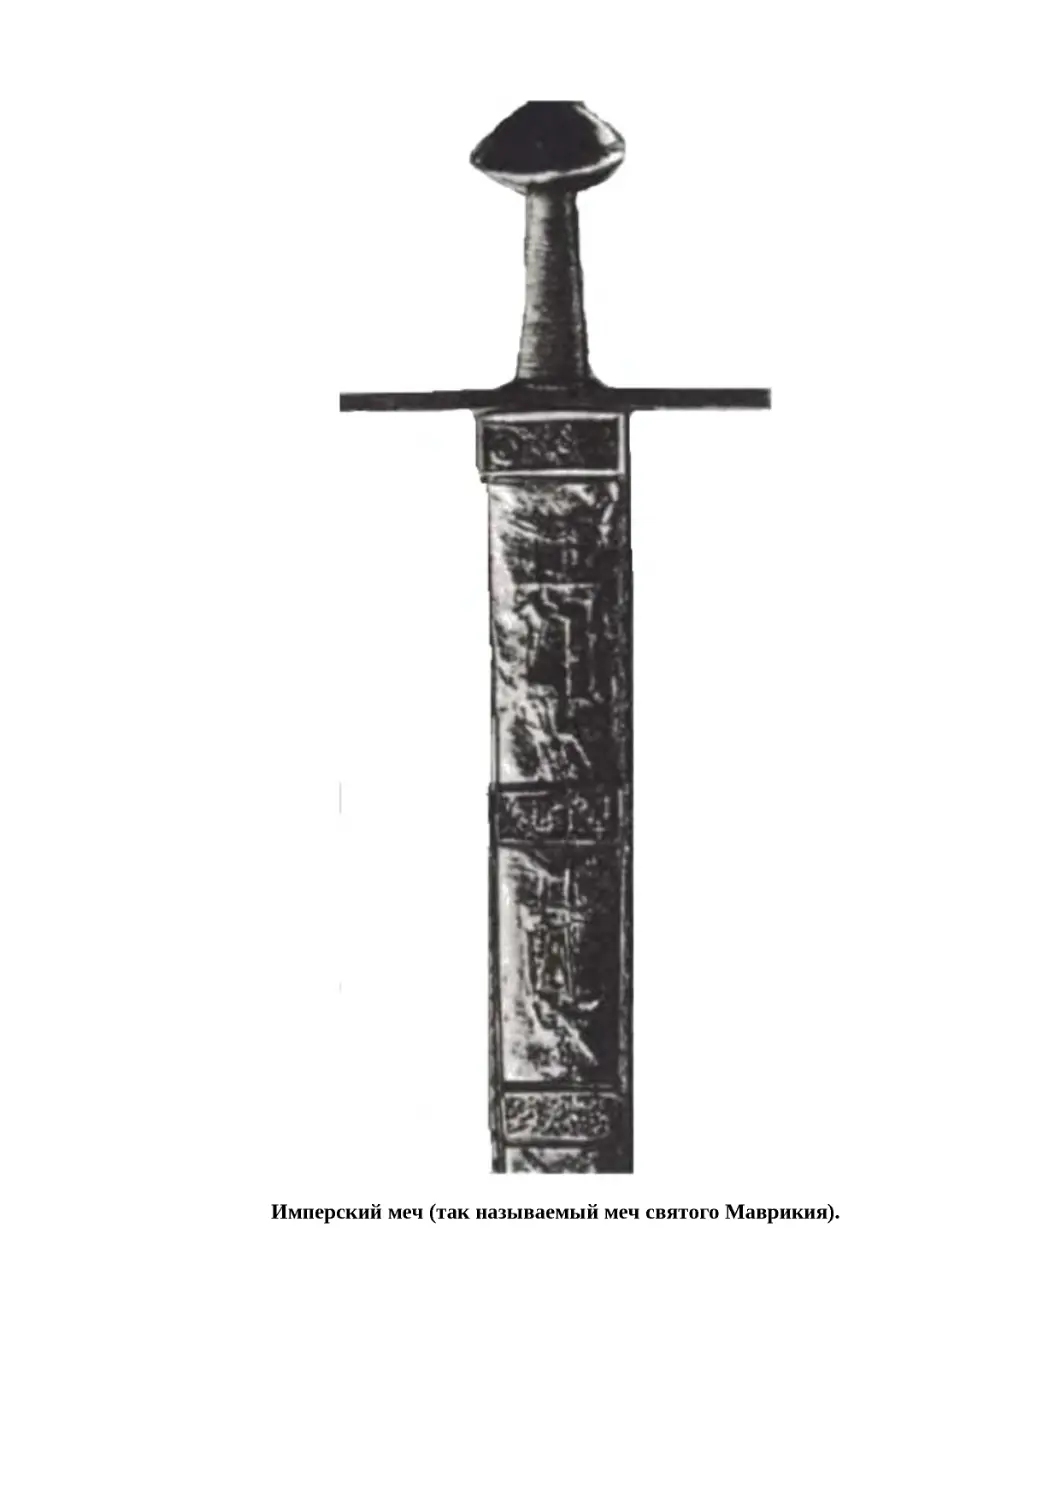 "
﻿Имперский меч øтак называемый меч святого Маврикияù